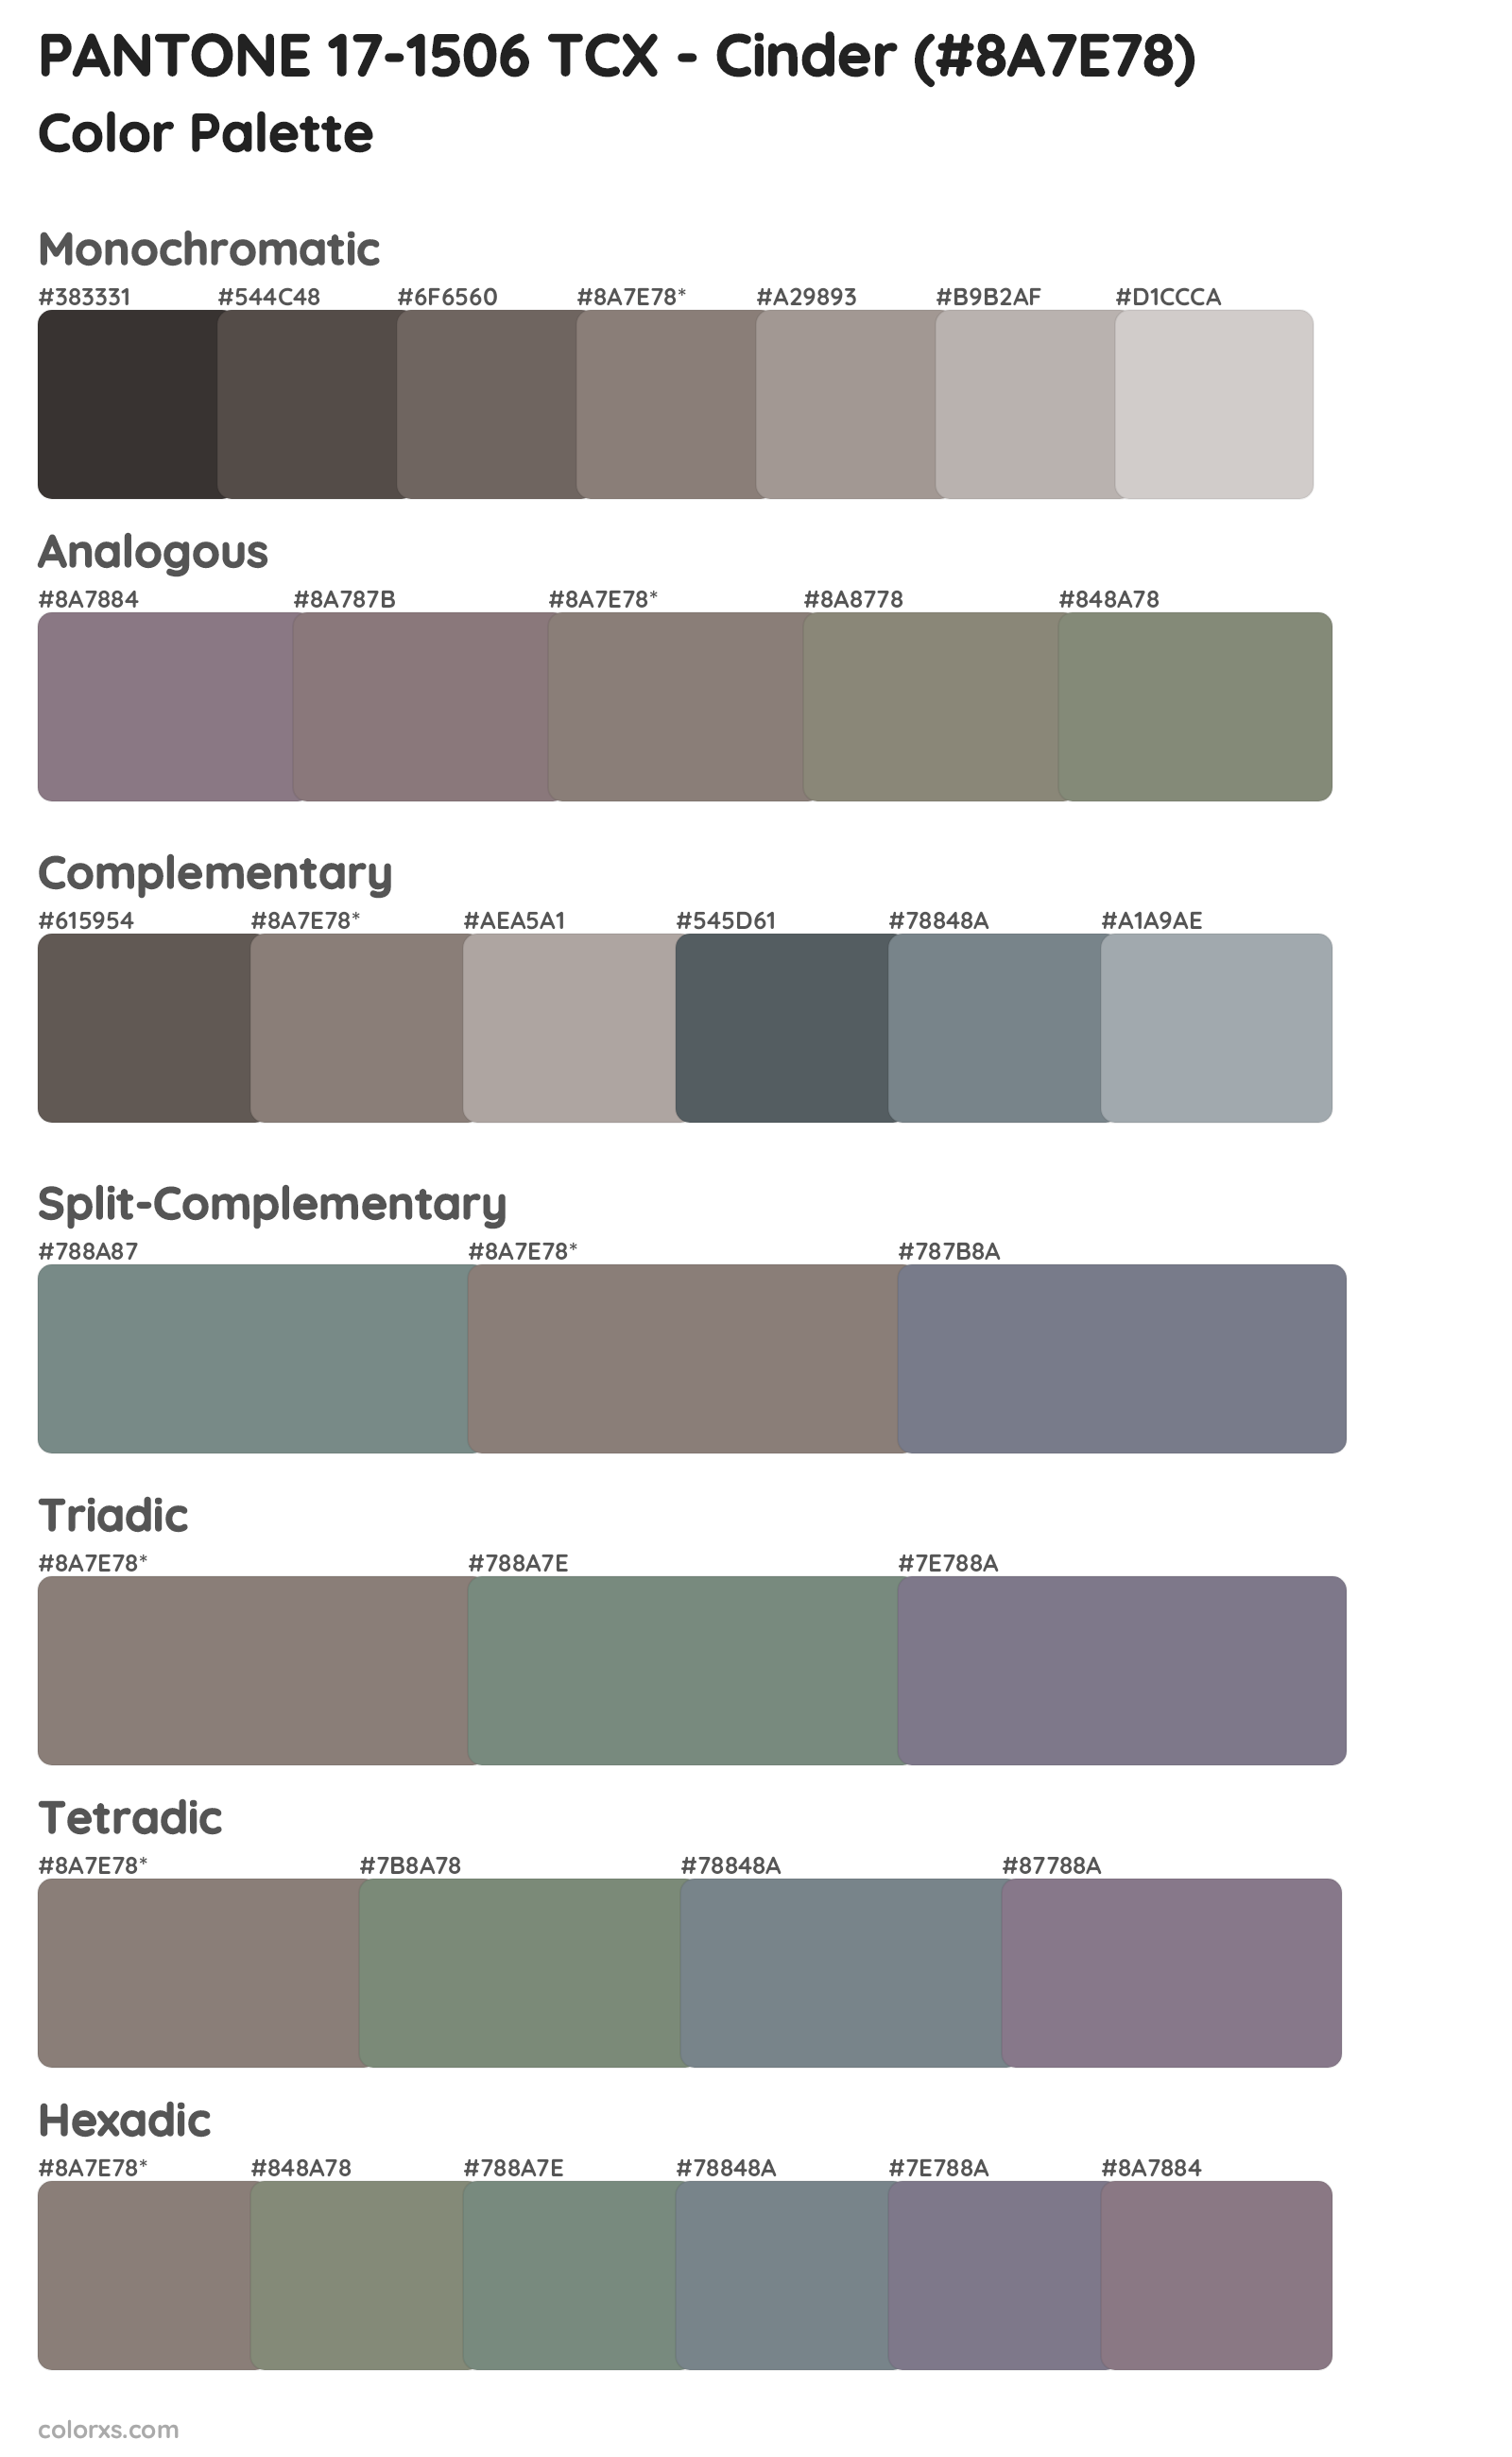 PANTONE 17-1506 TCX - Cinder Color Scheme Palettes